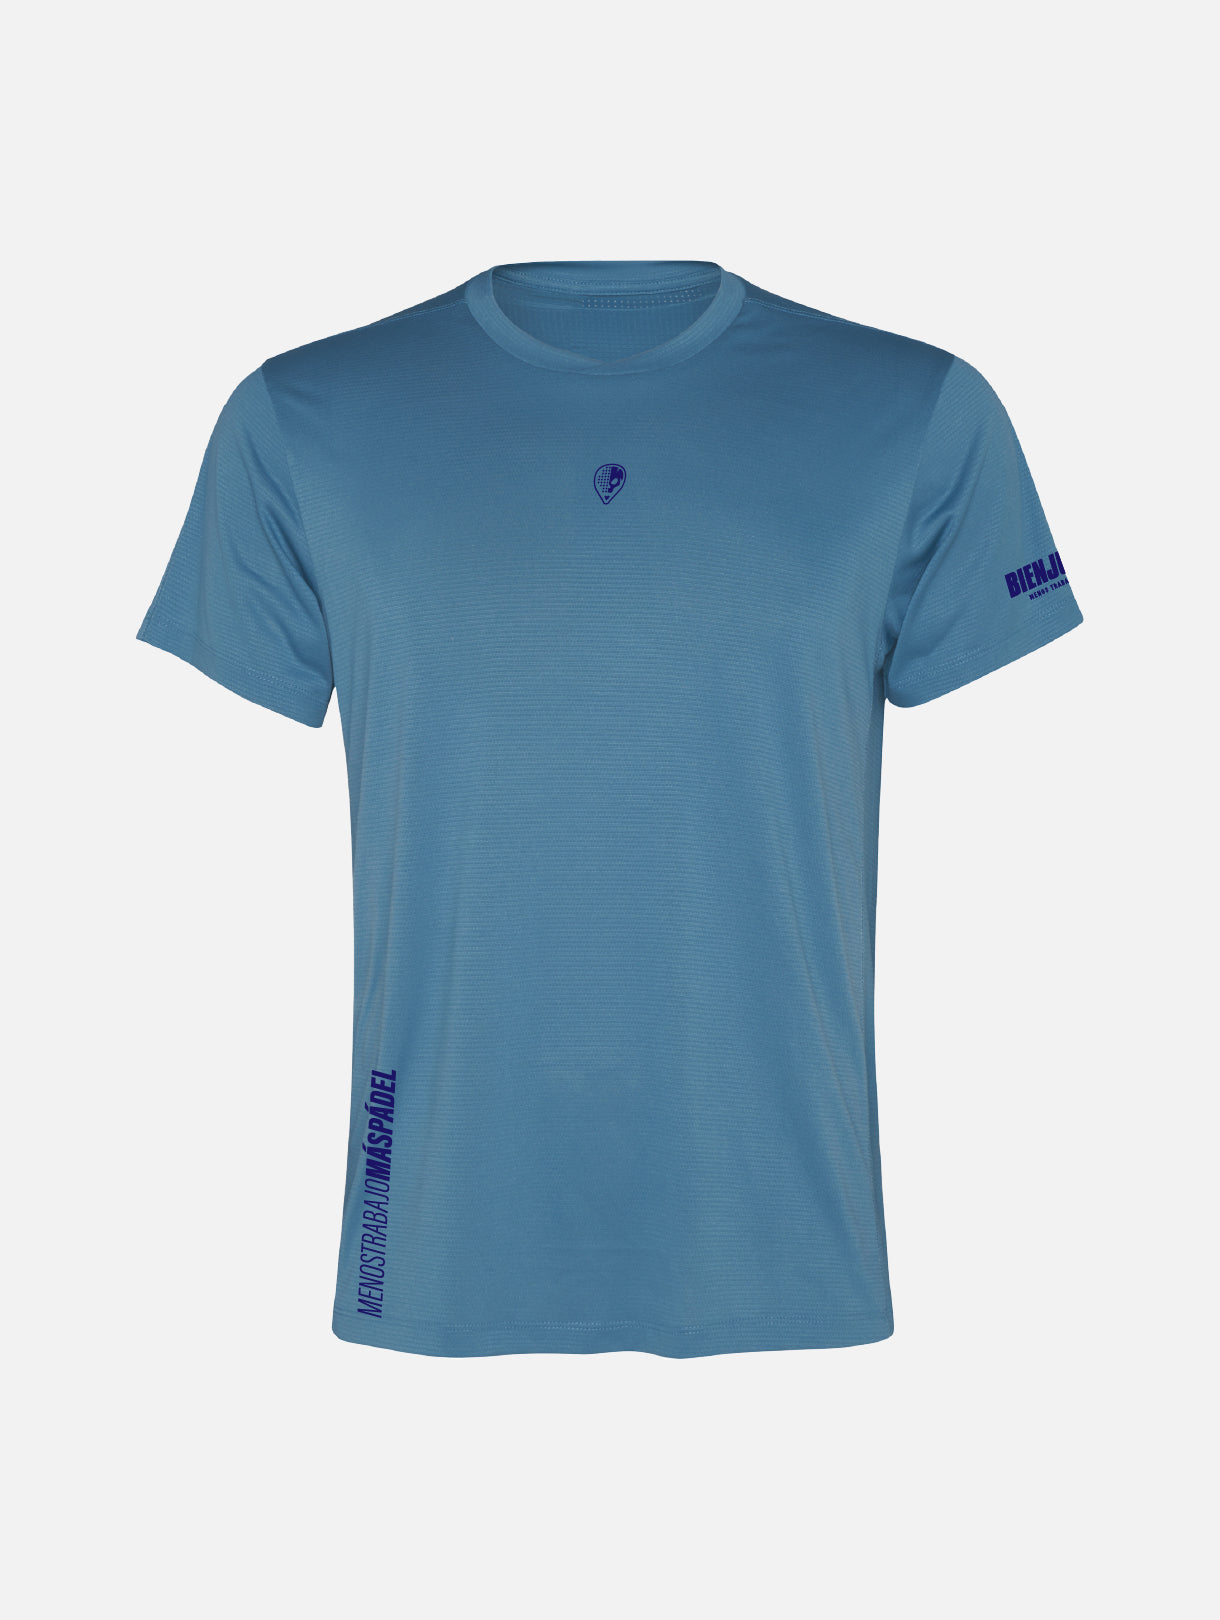 T-shirt Breezy Augustìn - Storm Blue